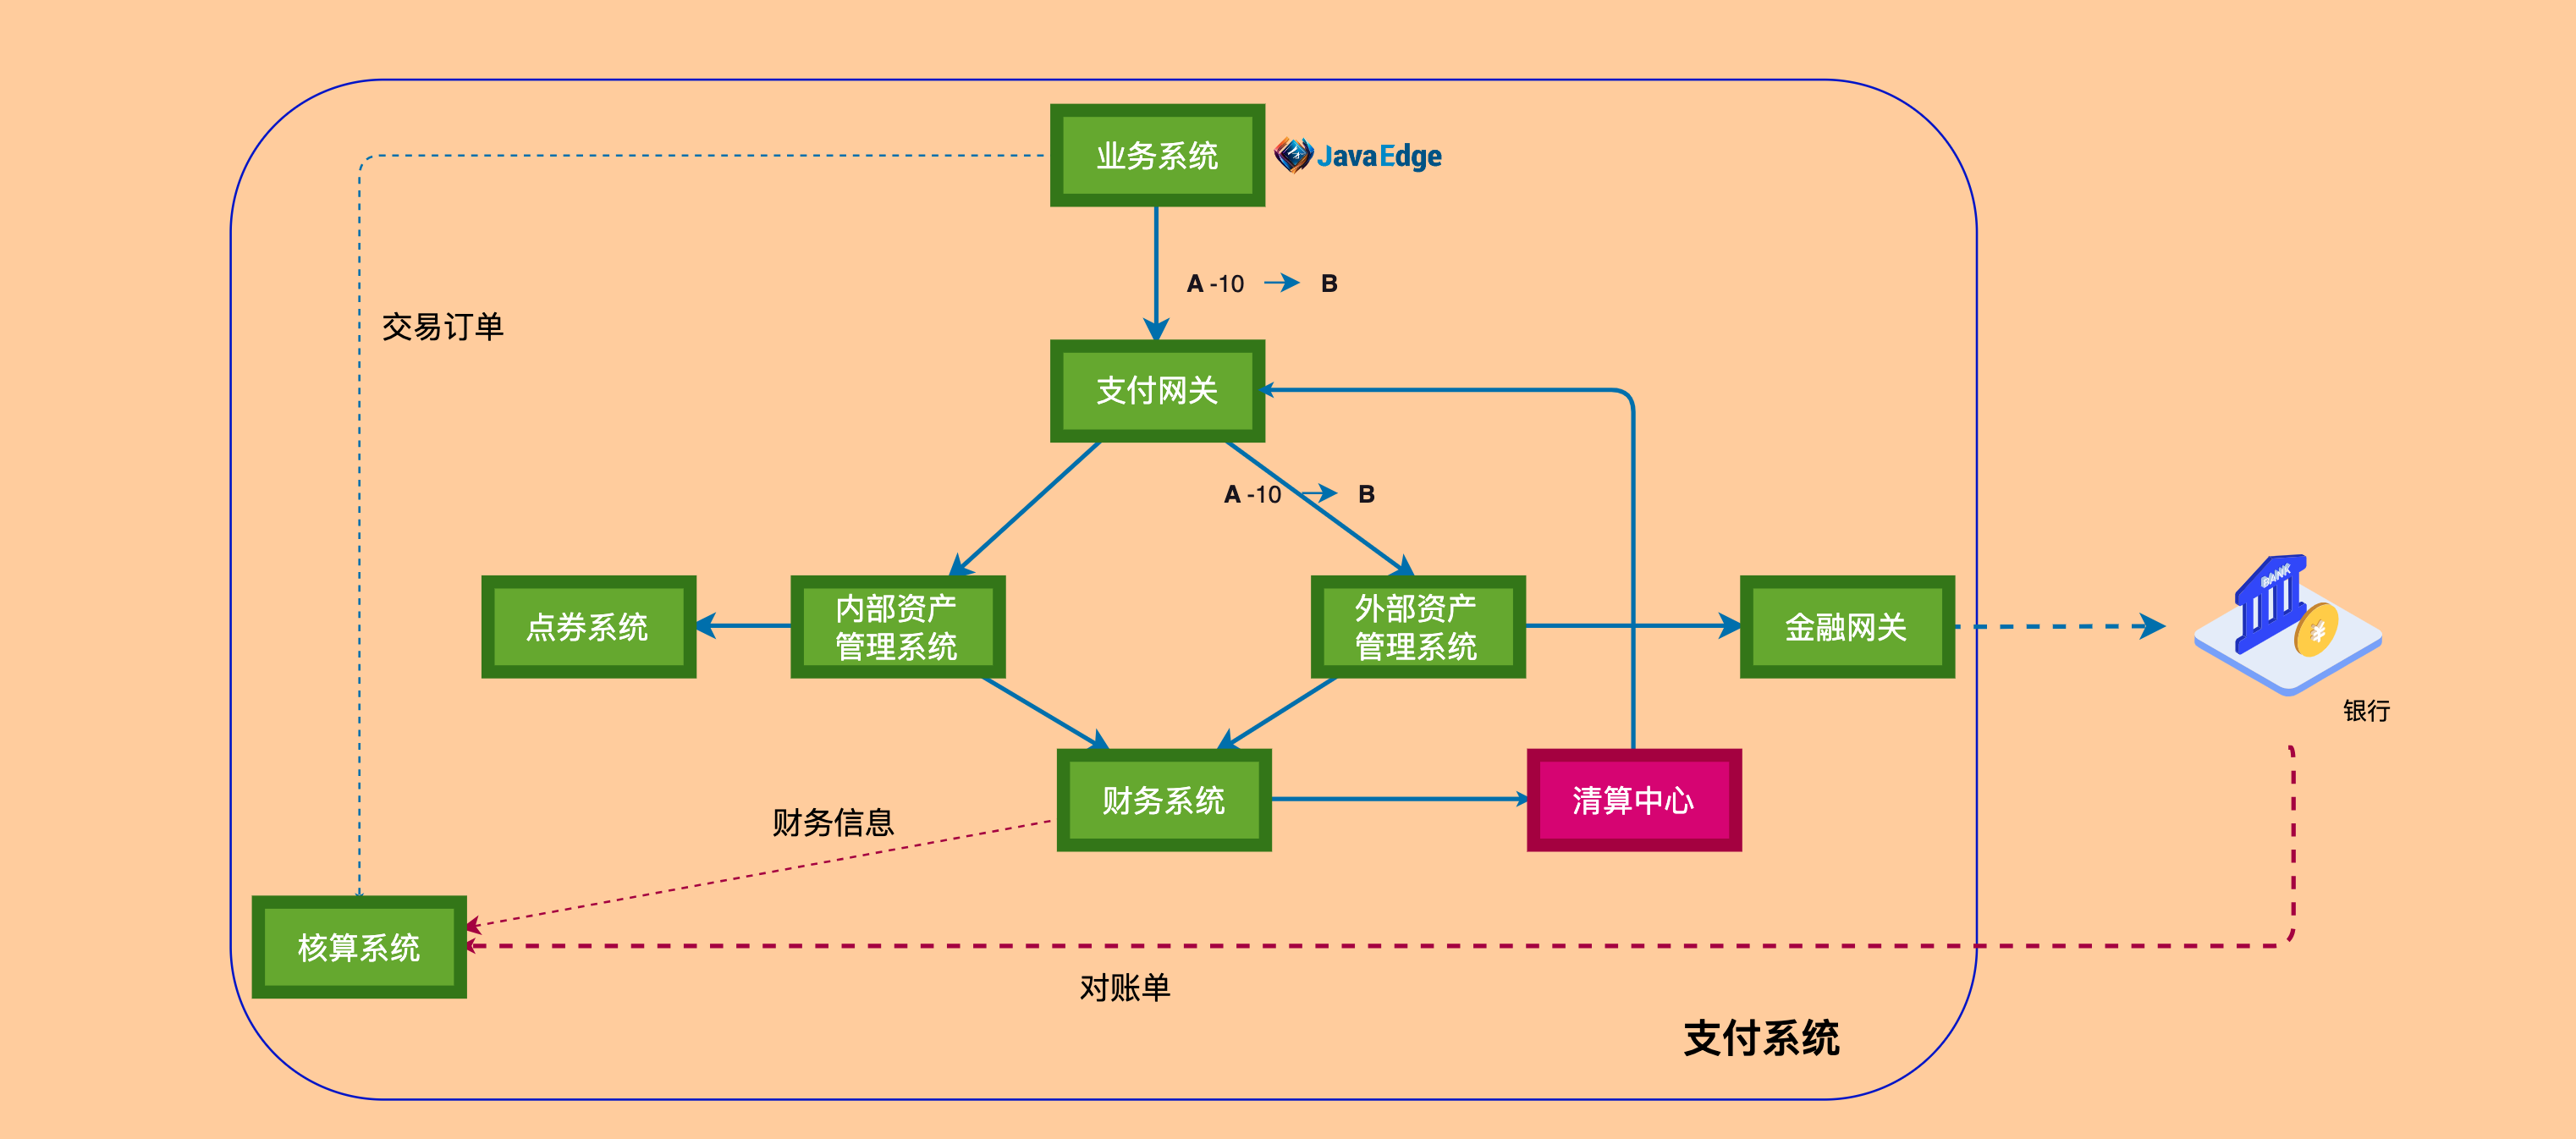 大厂的第三方支付业务架构设计_大模型应用开发_11